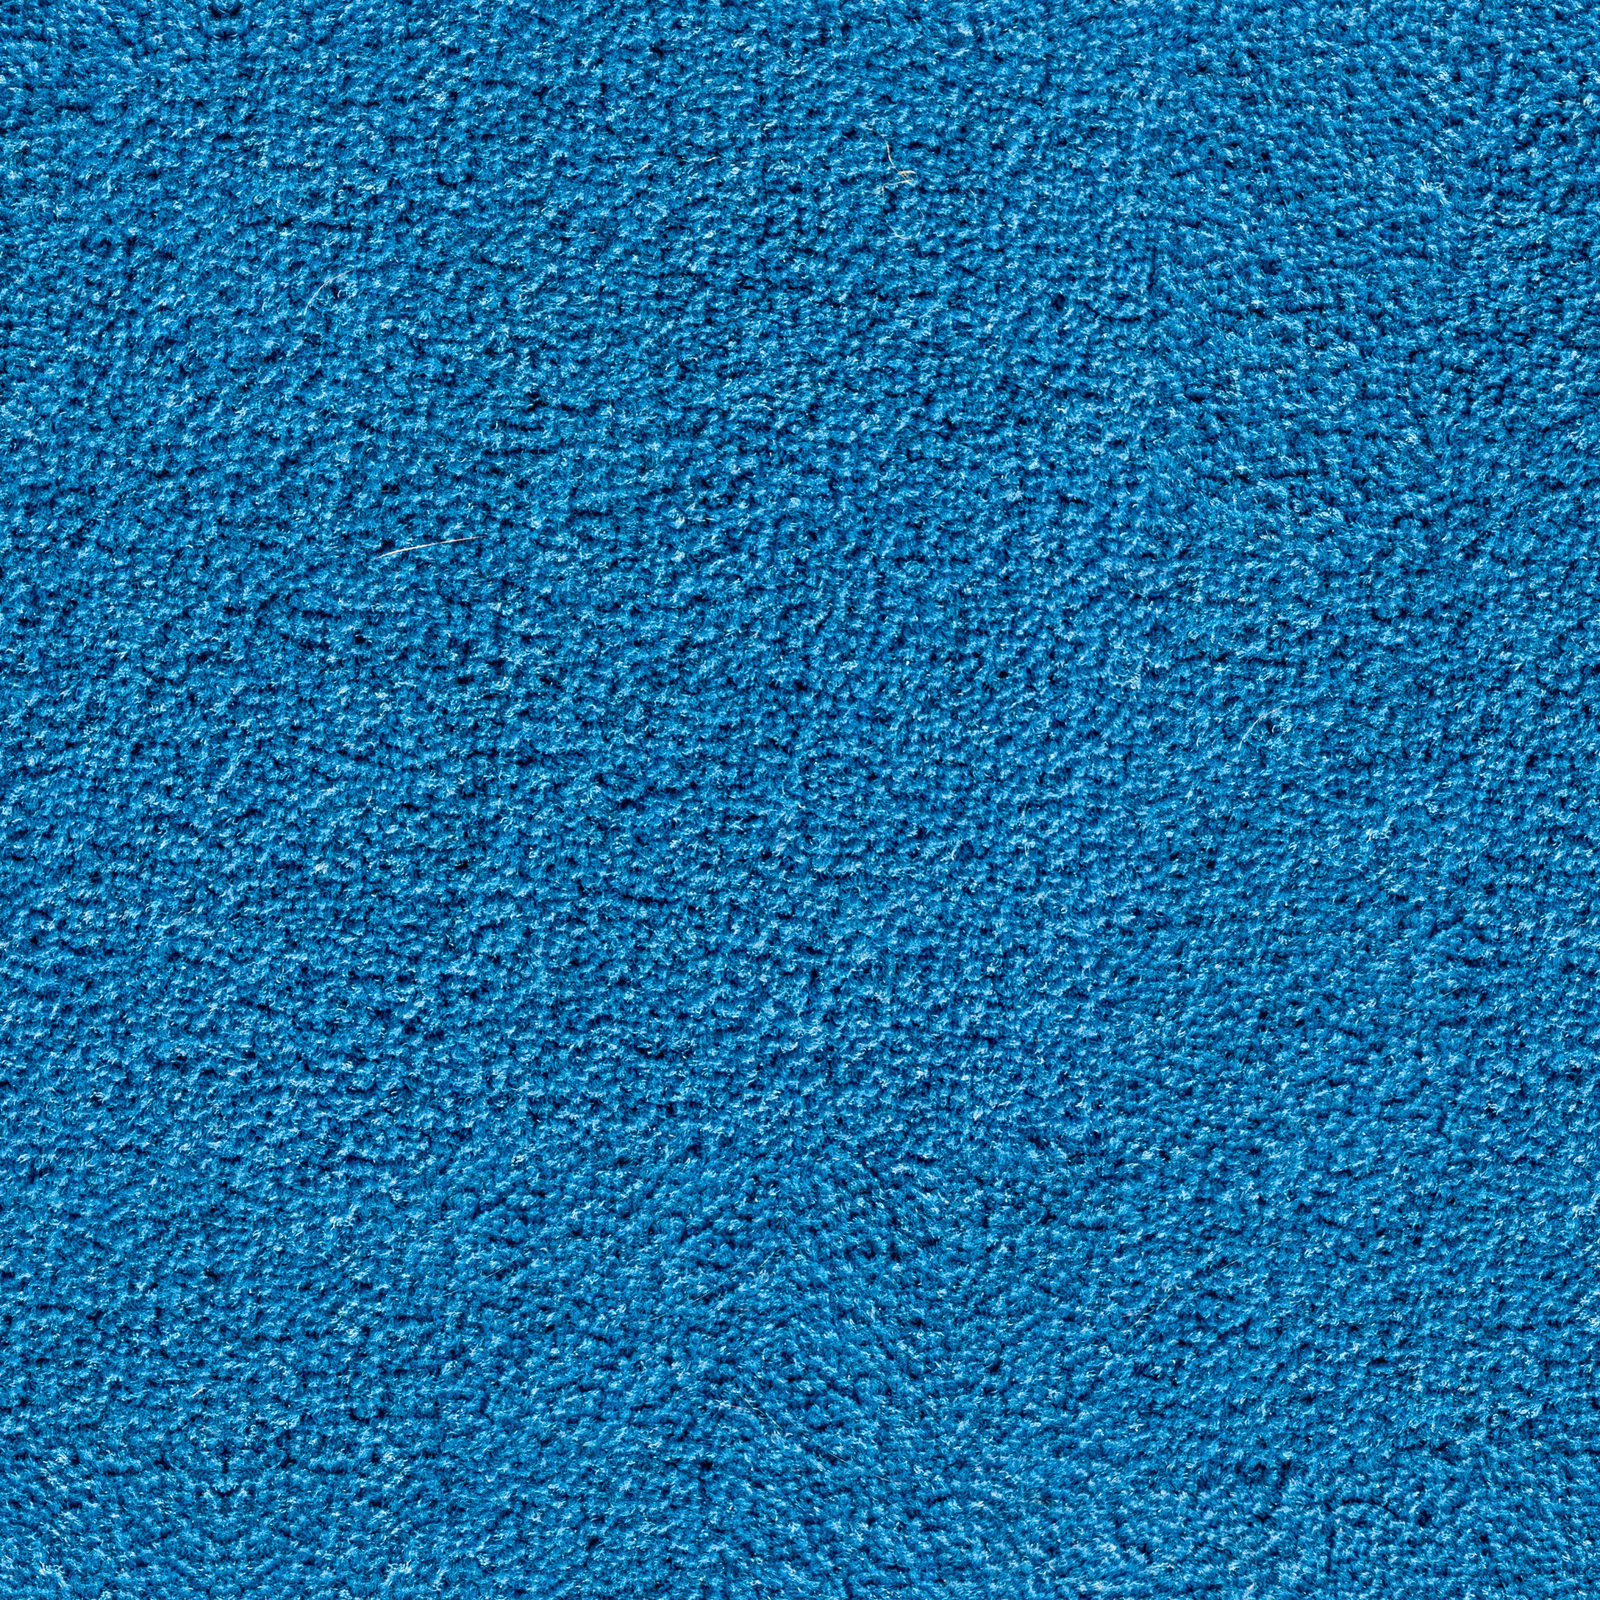 light blue rug texture